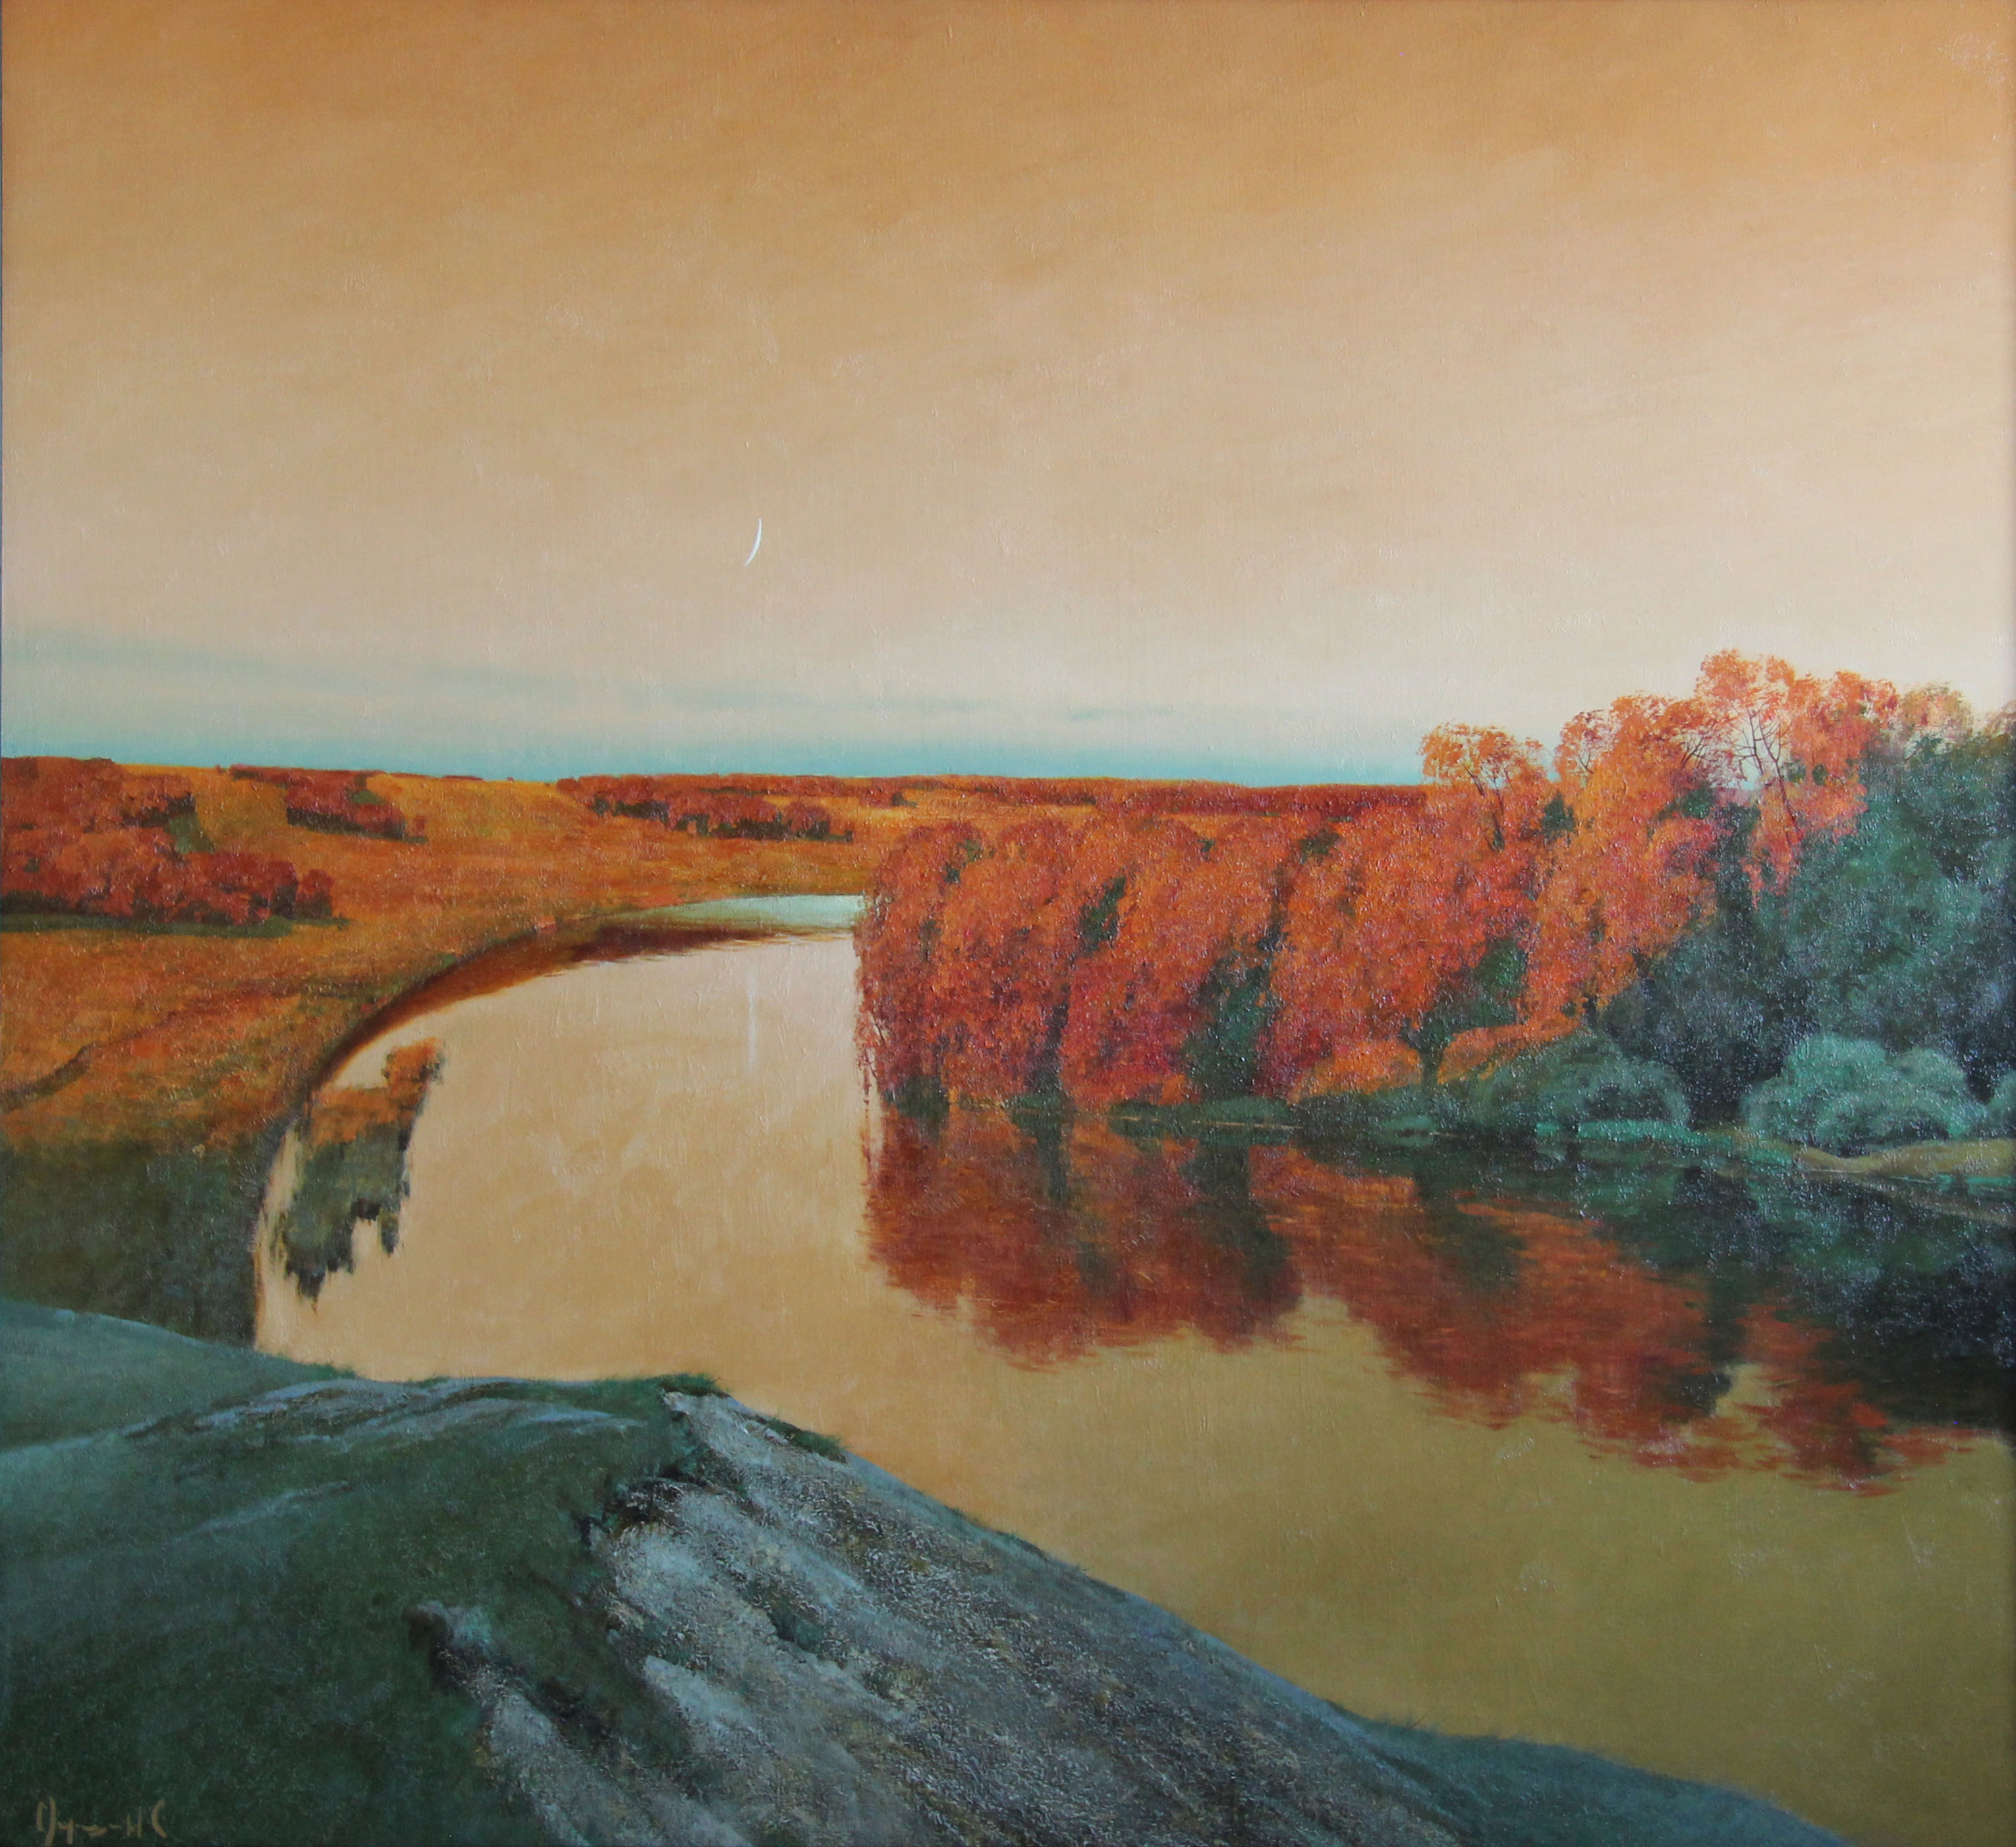 Sunset on the River - 1, Stas Miroshnikov, Buy the painting Oil